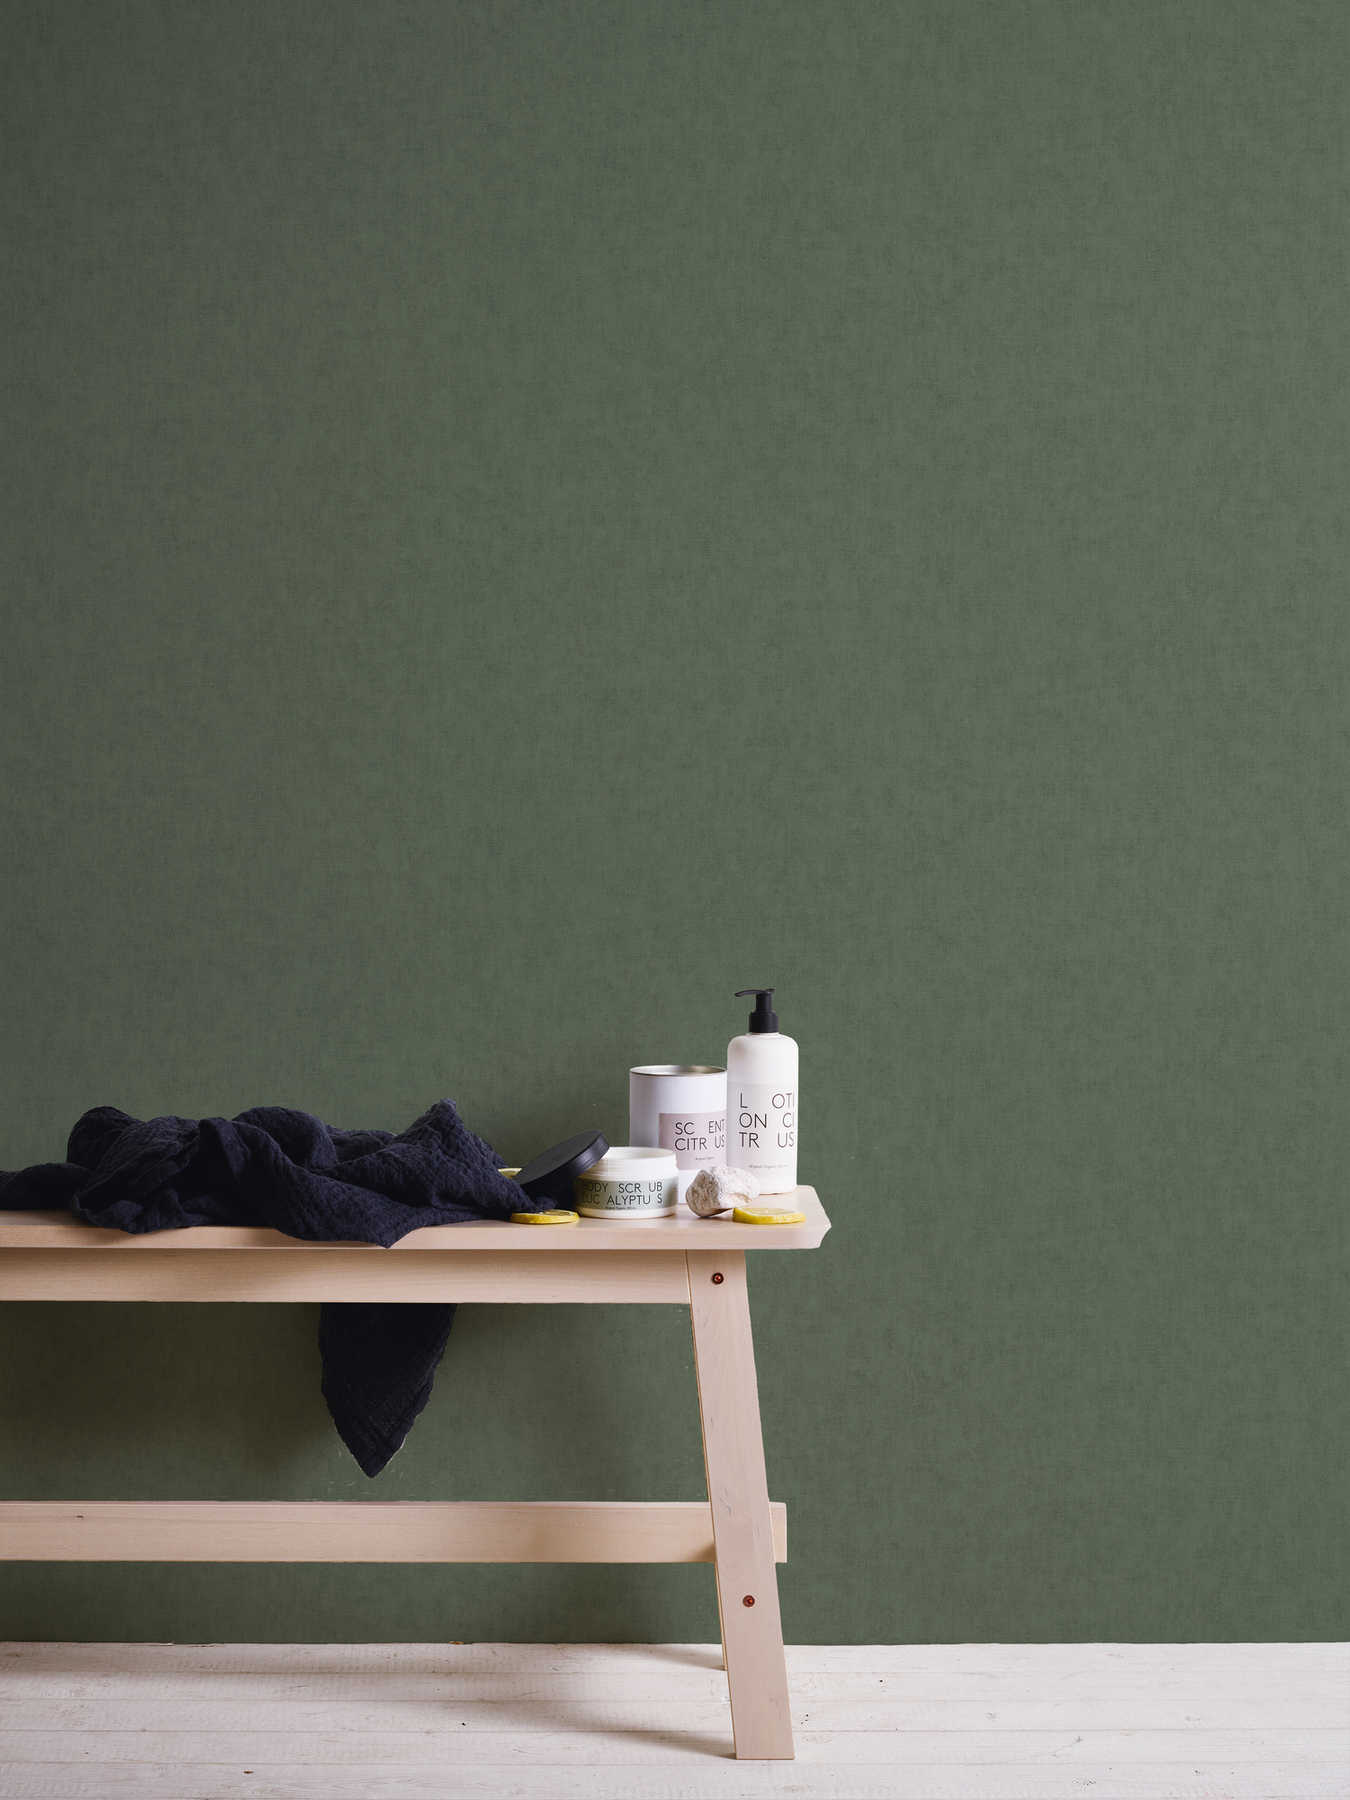             Non-woven wallpaper textile look Scandinavian style - grey, brown
        